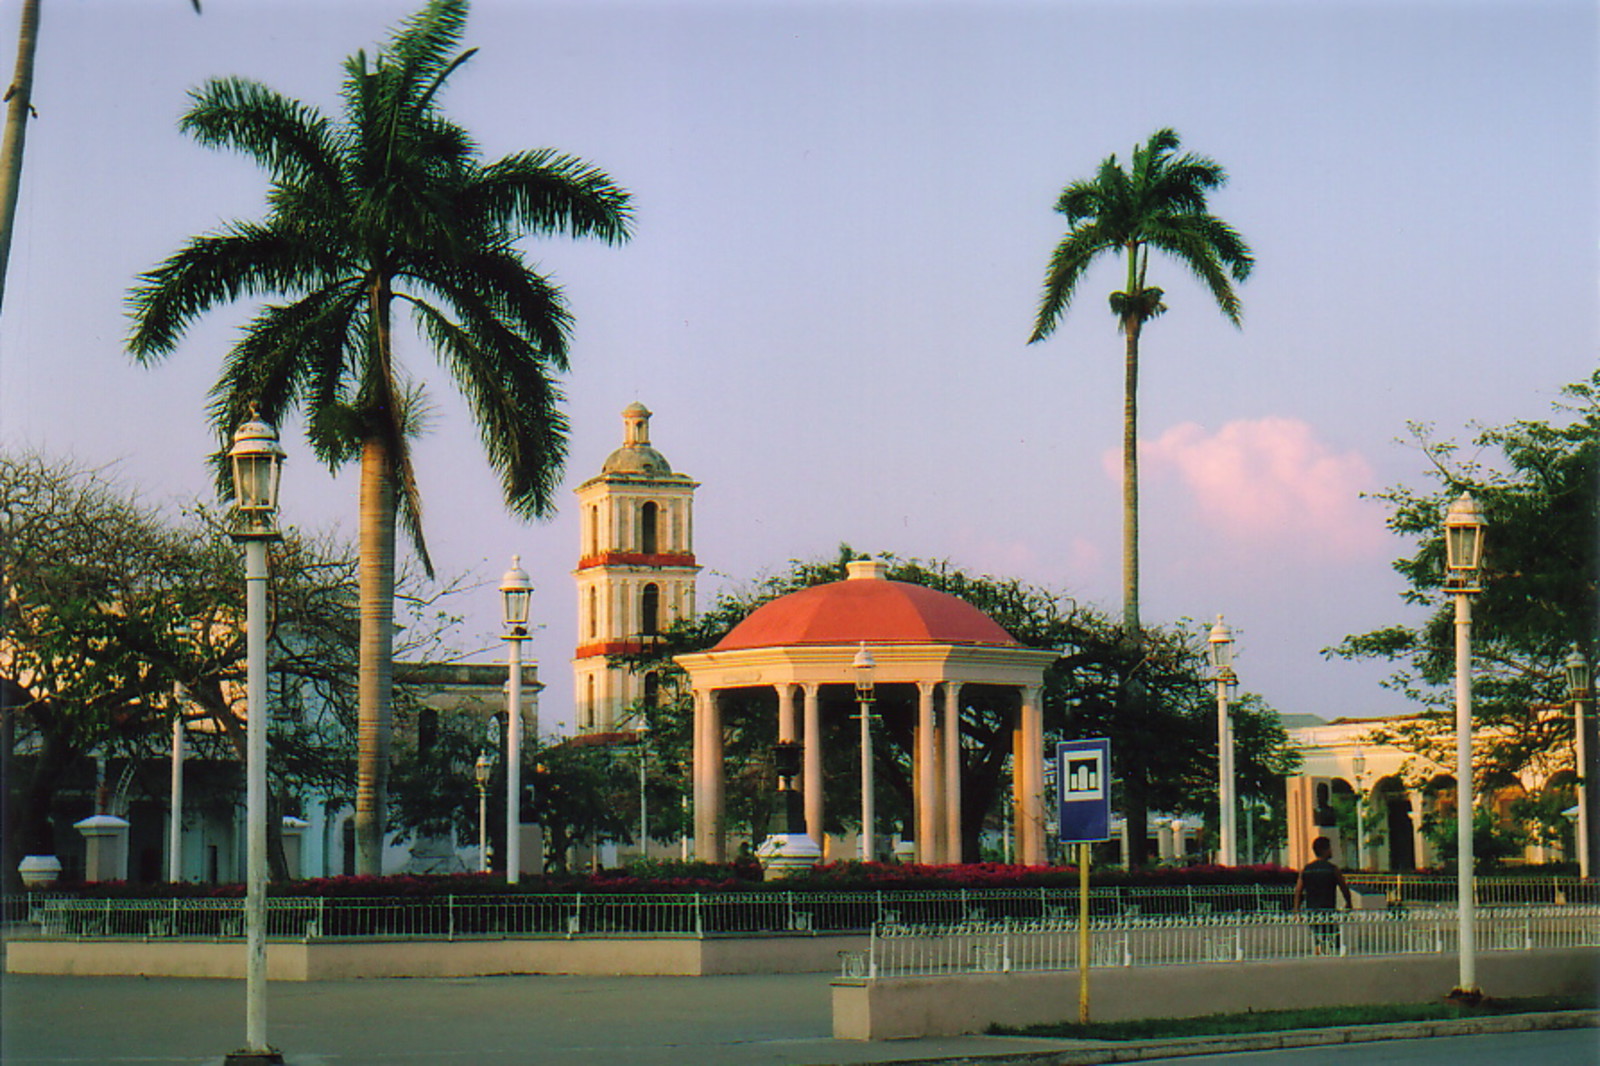 The main square in Iglesia Buen Viaje with Iglesia Buen Viaje in the background